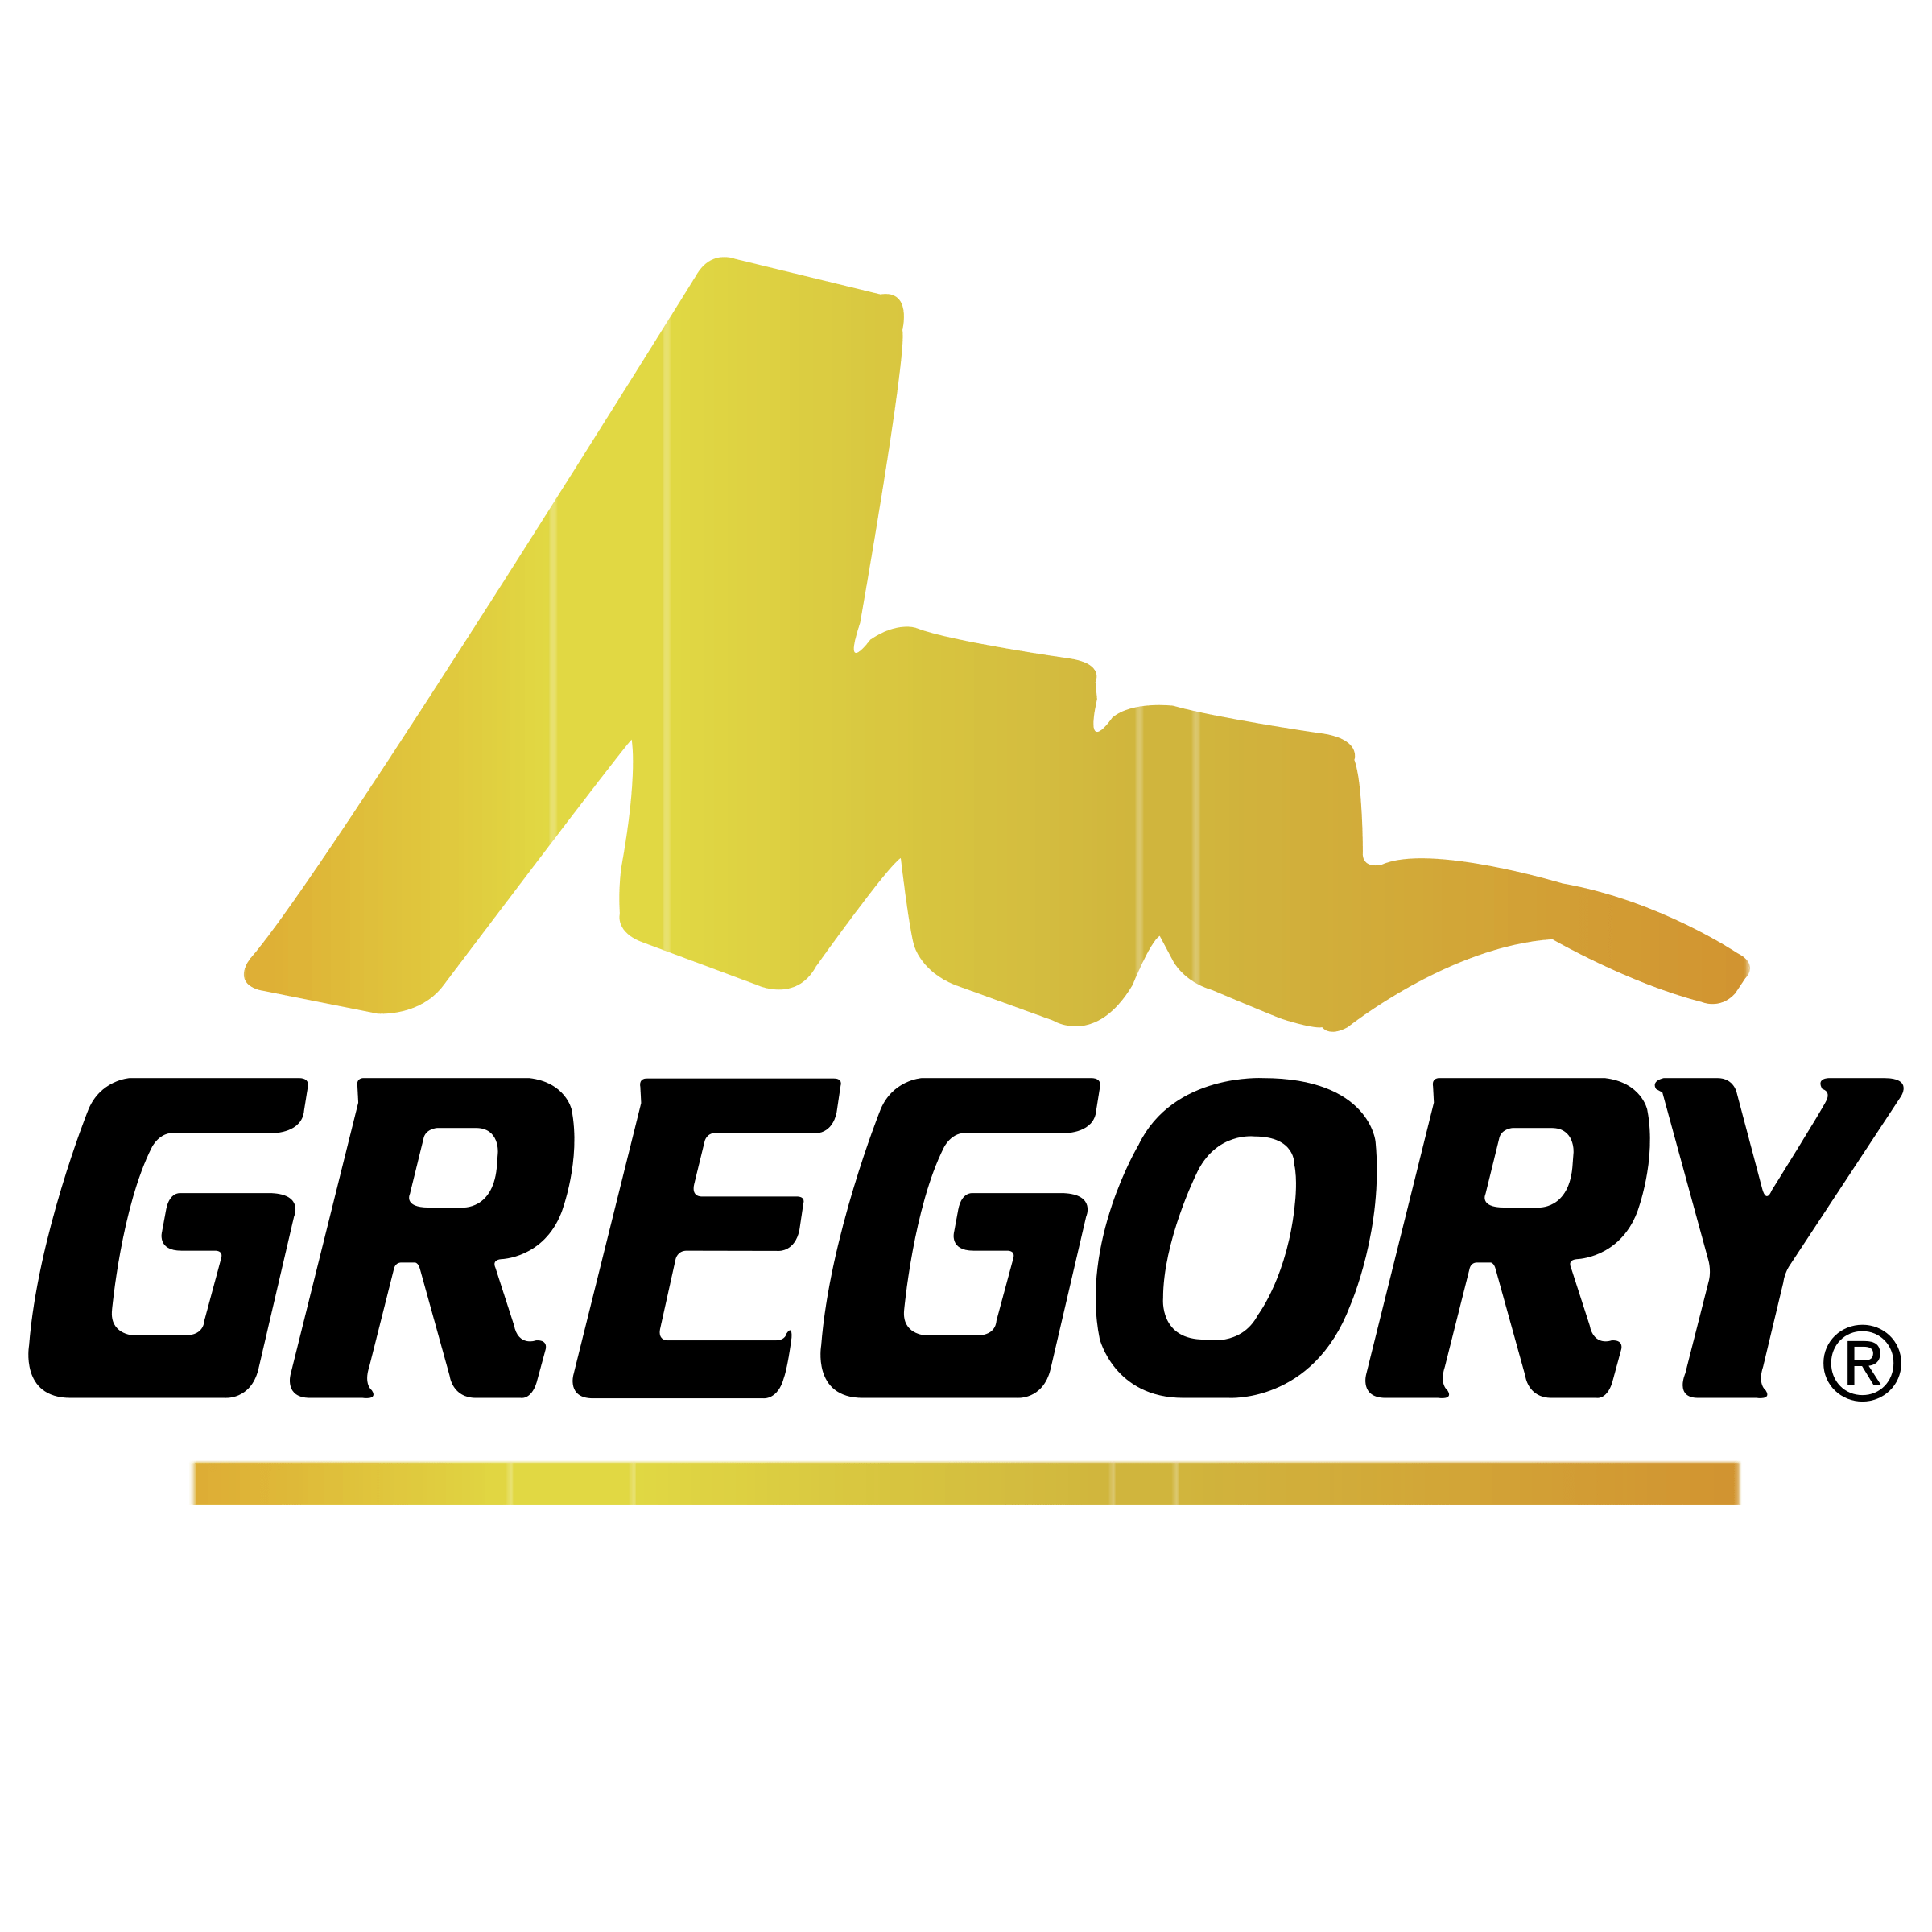 Gregory Logo - Gregory Logo PNG Transparent & SVG Vector - Freebie Supply